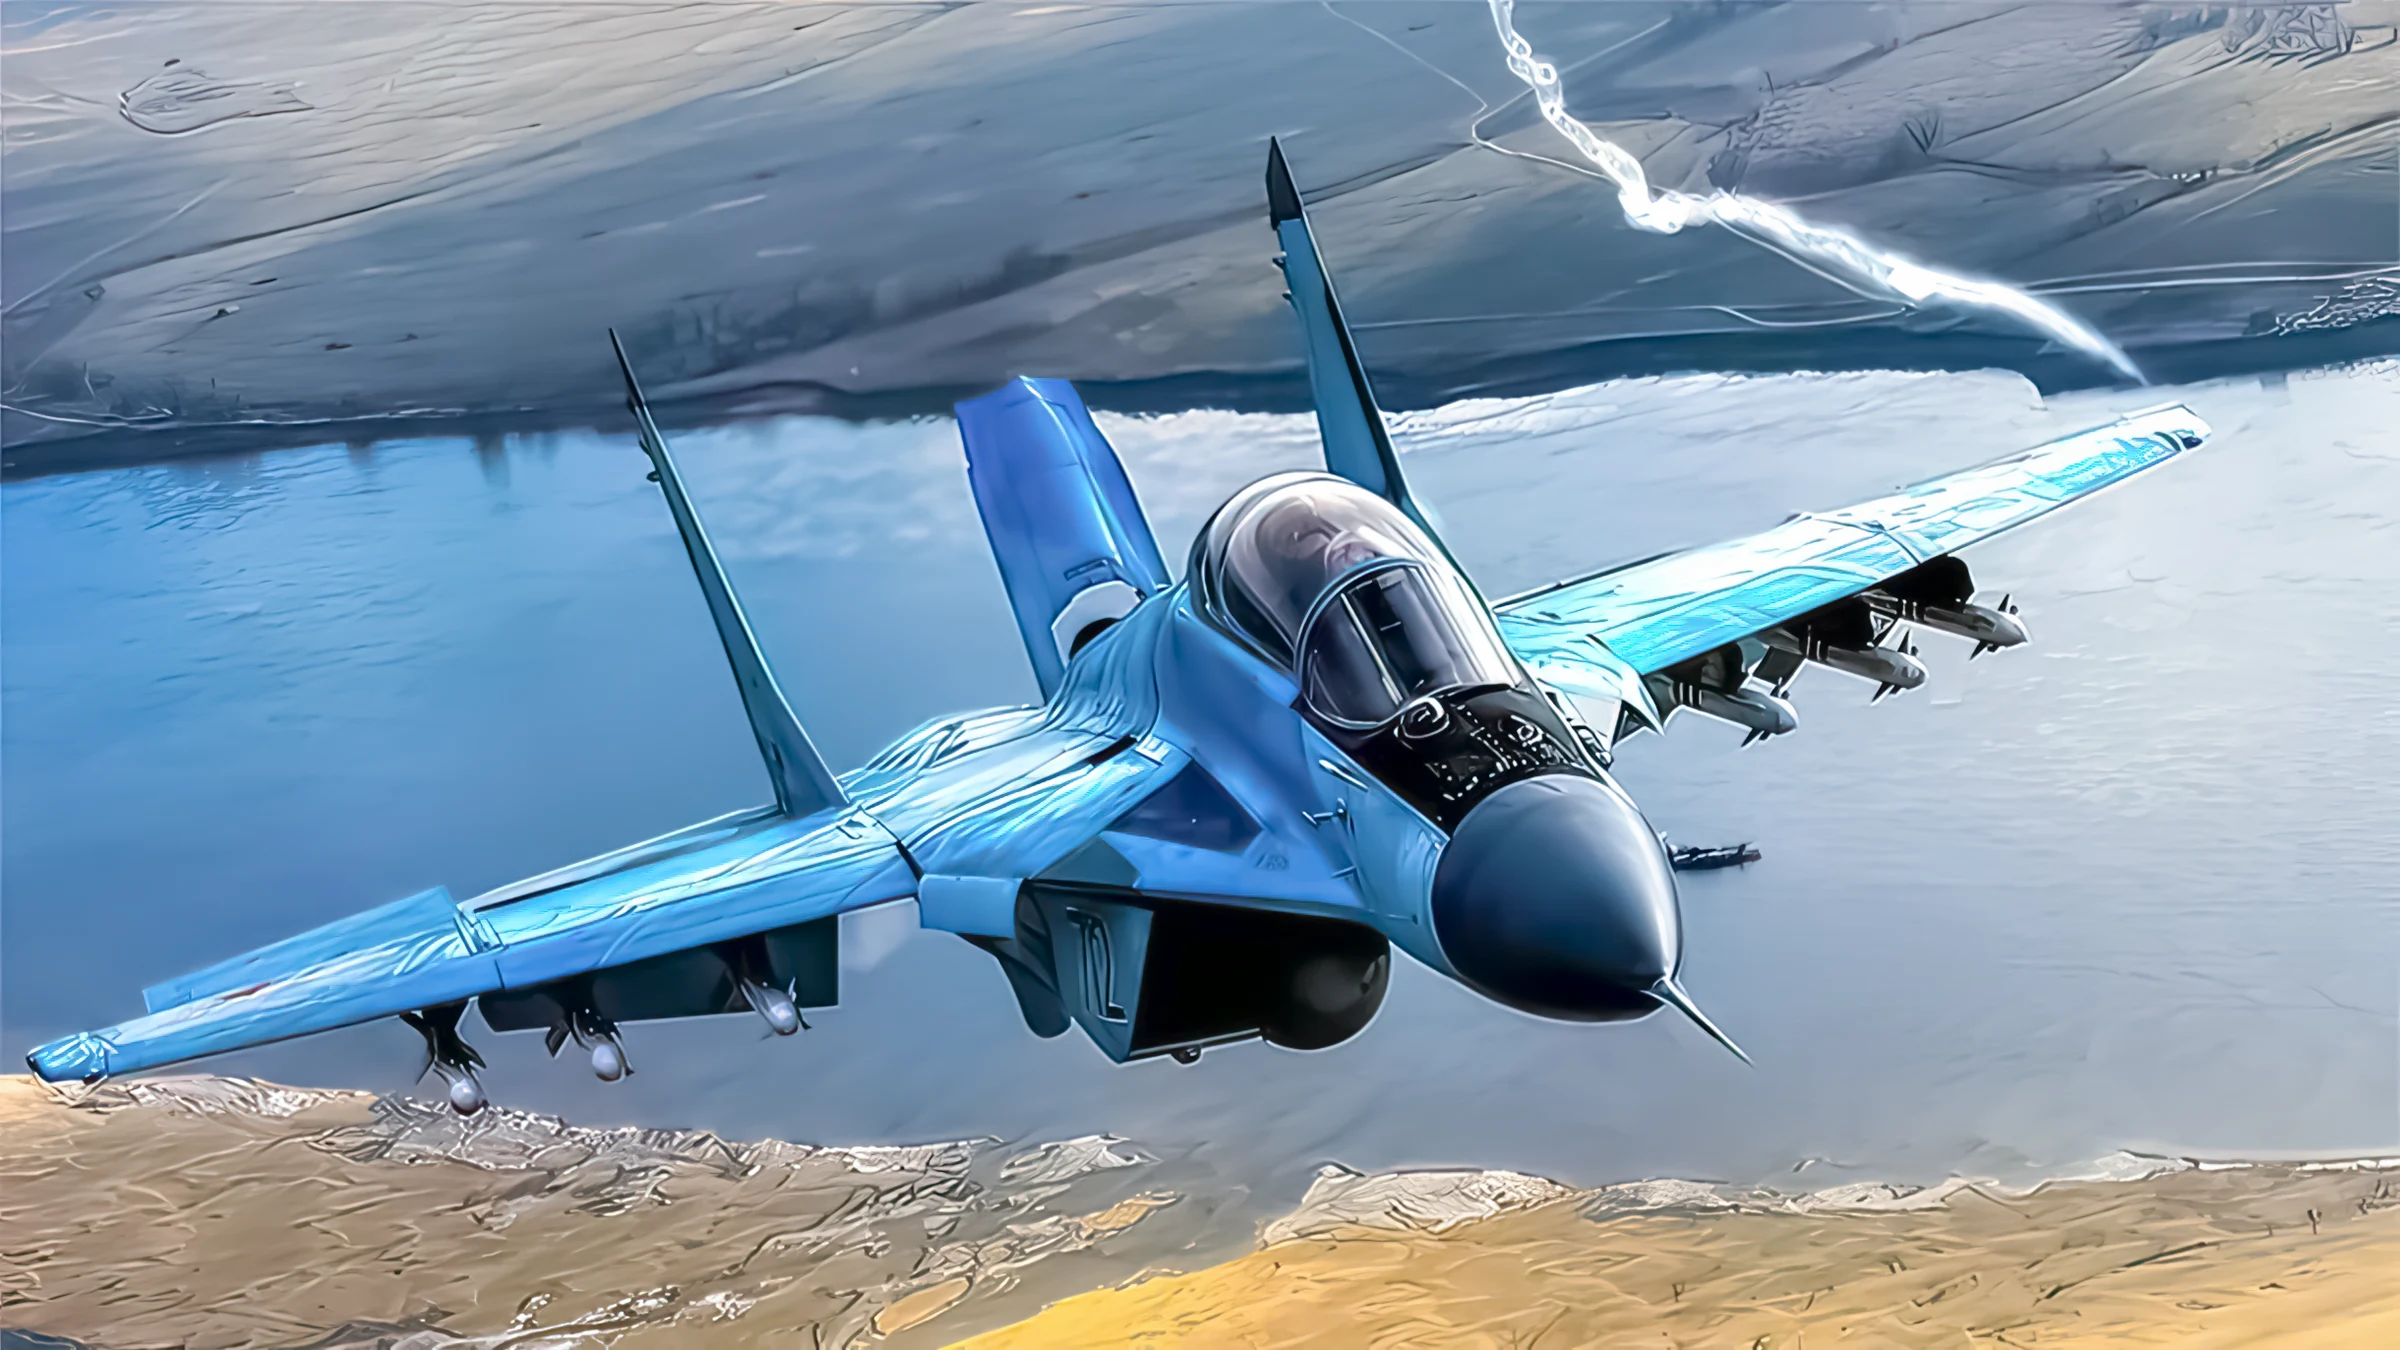 El caza ruso MiG-35 parece un fracaso aéreo